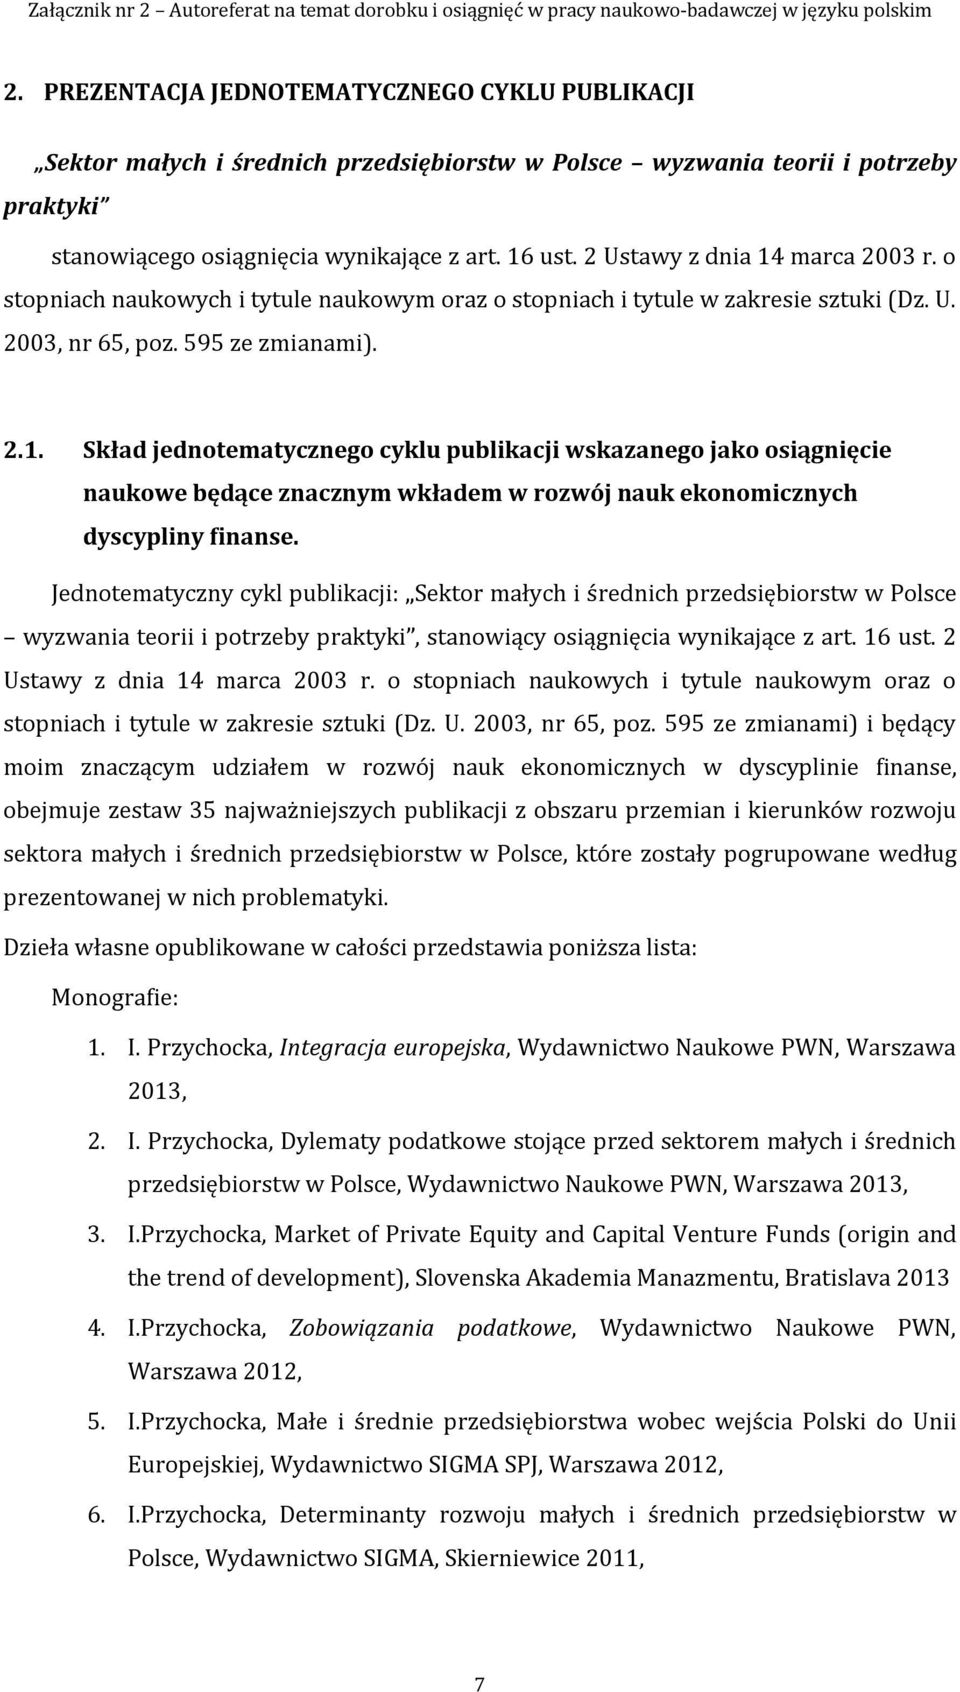 Jednotematyczny cykl publikacji: Sektor małych i średnich przedsiębiorstw w Polsce wyzwania teorii i potrzeby praktyki, stanowiący osiągnięcia wynikające z art. 16 ust.